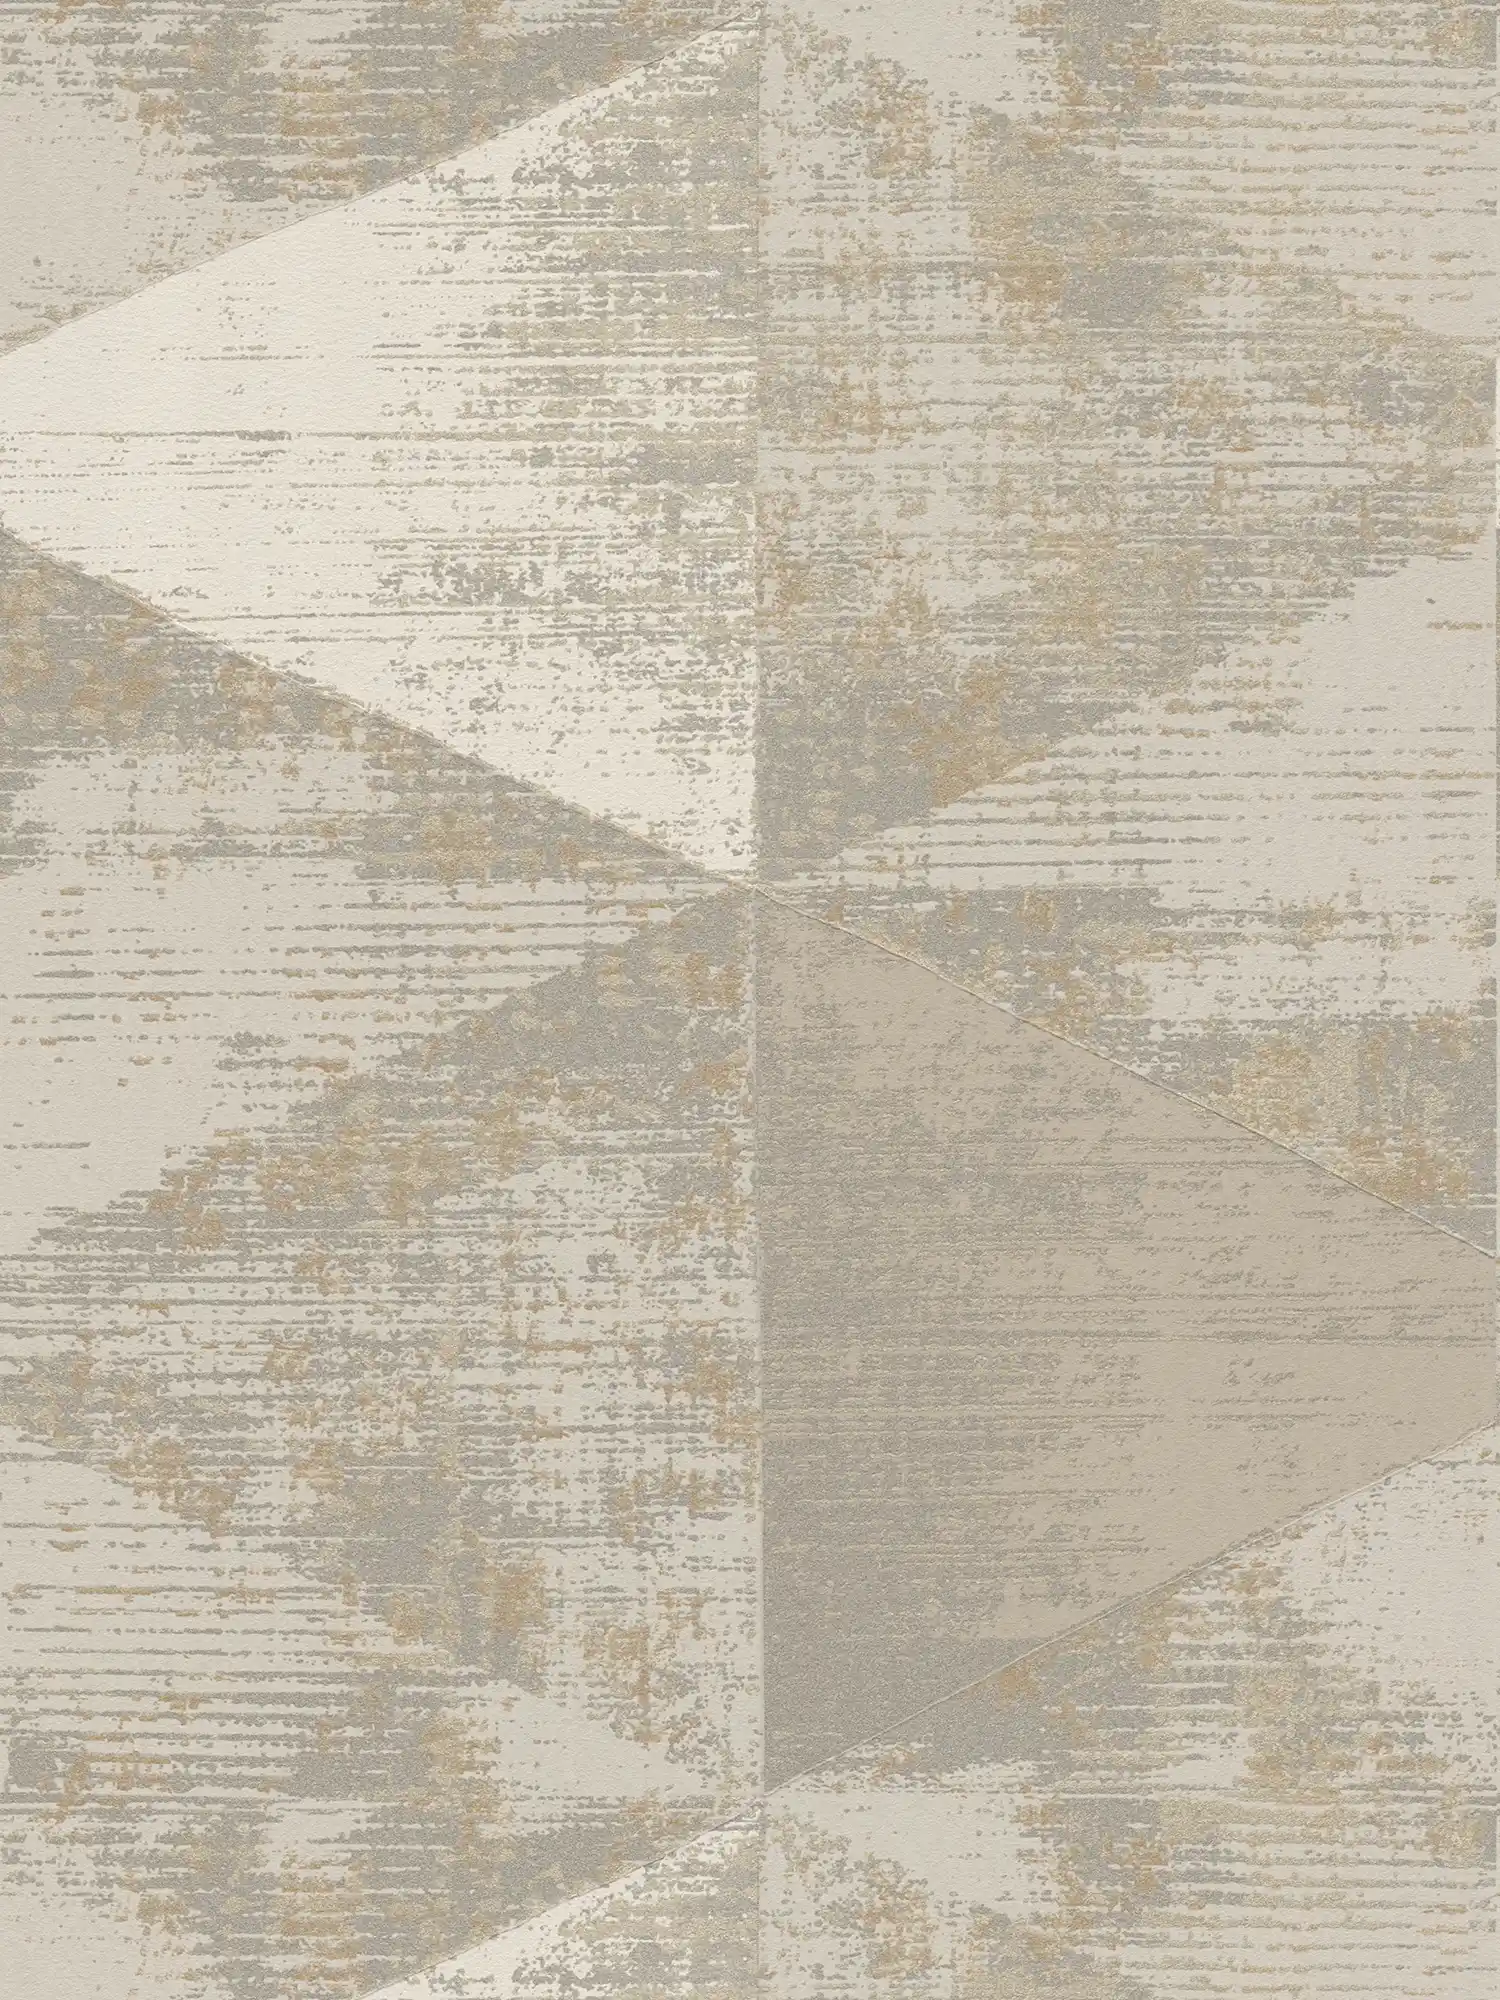         Papel pintado de estilo industrial con aspecto metálico rústico - metálico, beige, gris
    